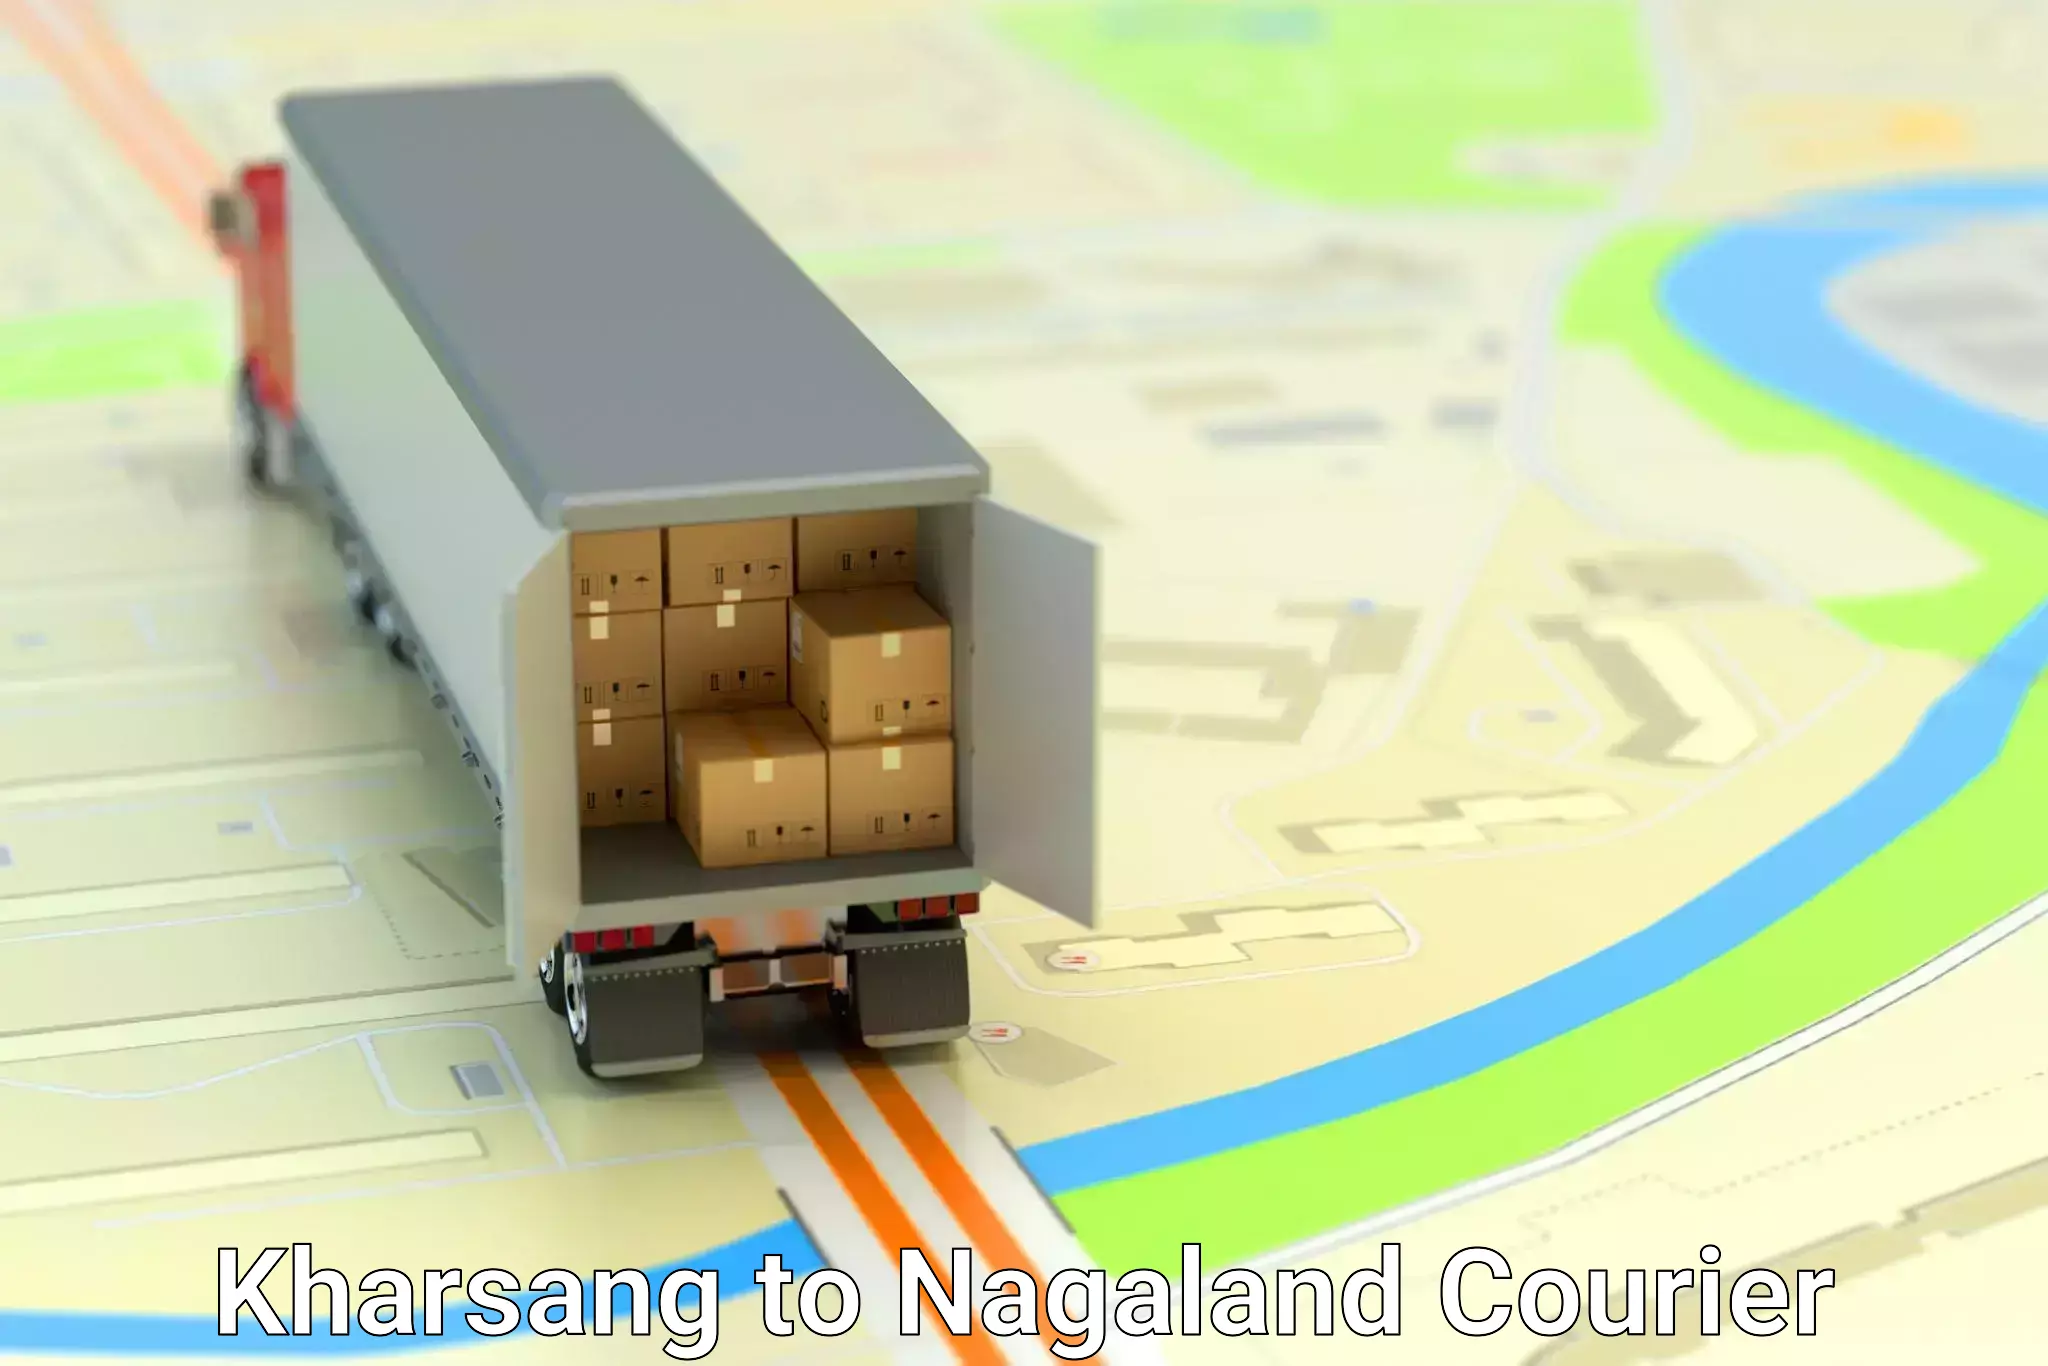 Global shipping networks Kharsang to Nagaland